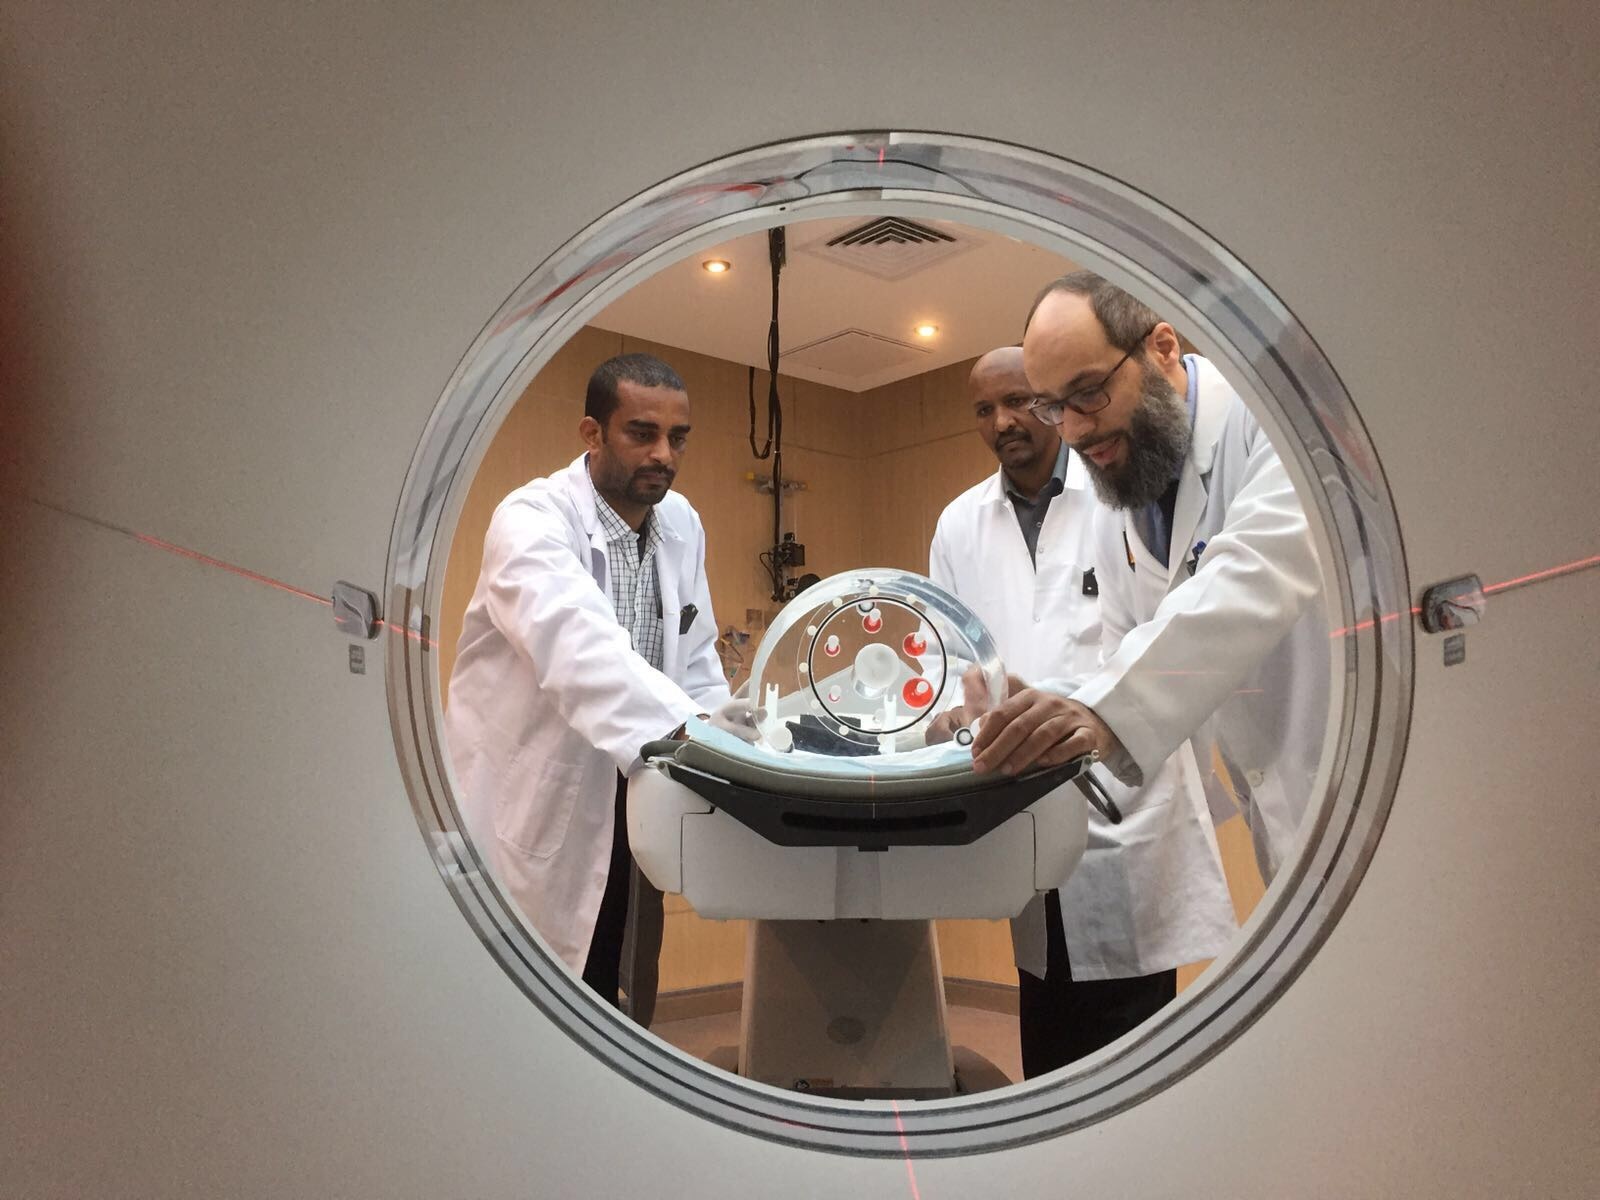 الفريق الطبي الكويتي أثناء عمل الاختبارات على الجهاز الحديث